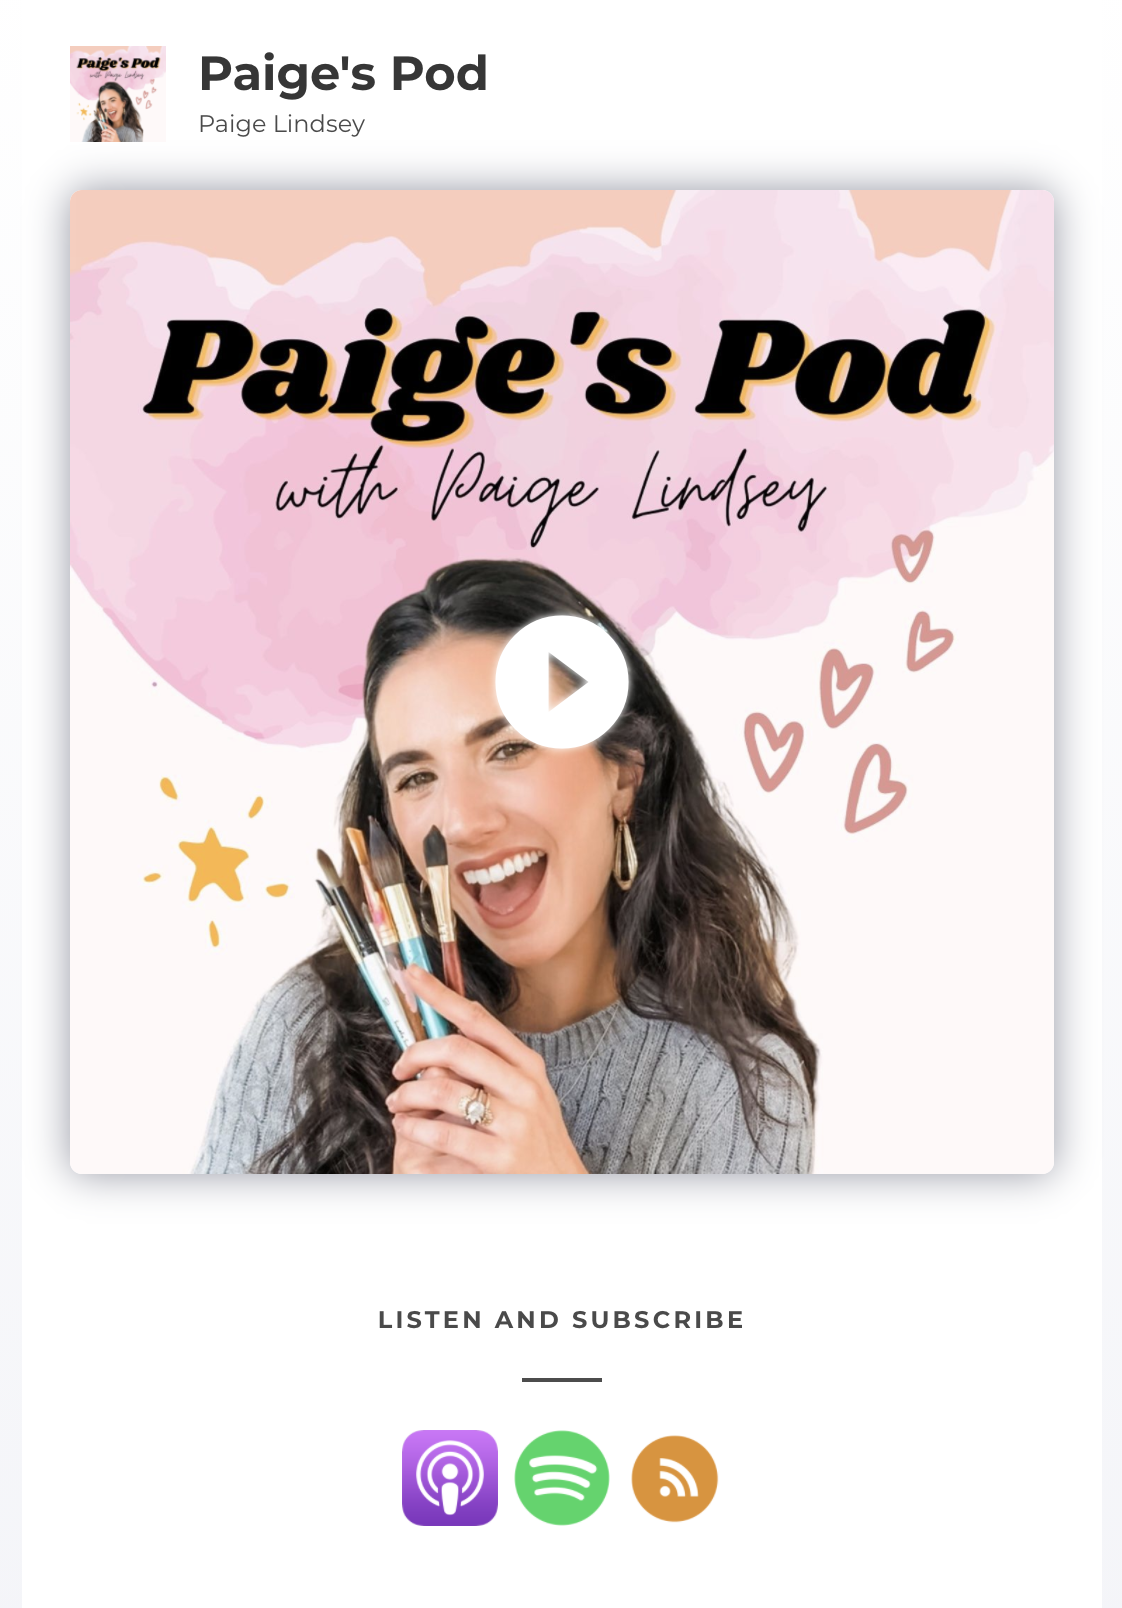 Listen to Paige's Podcast, Paige's Pod!